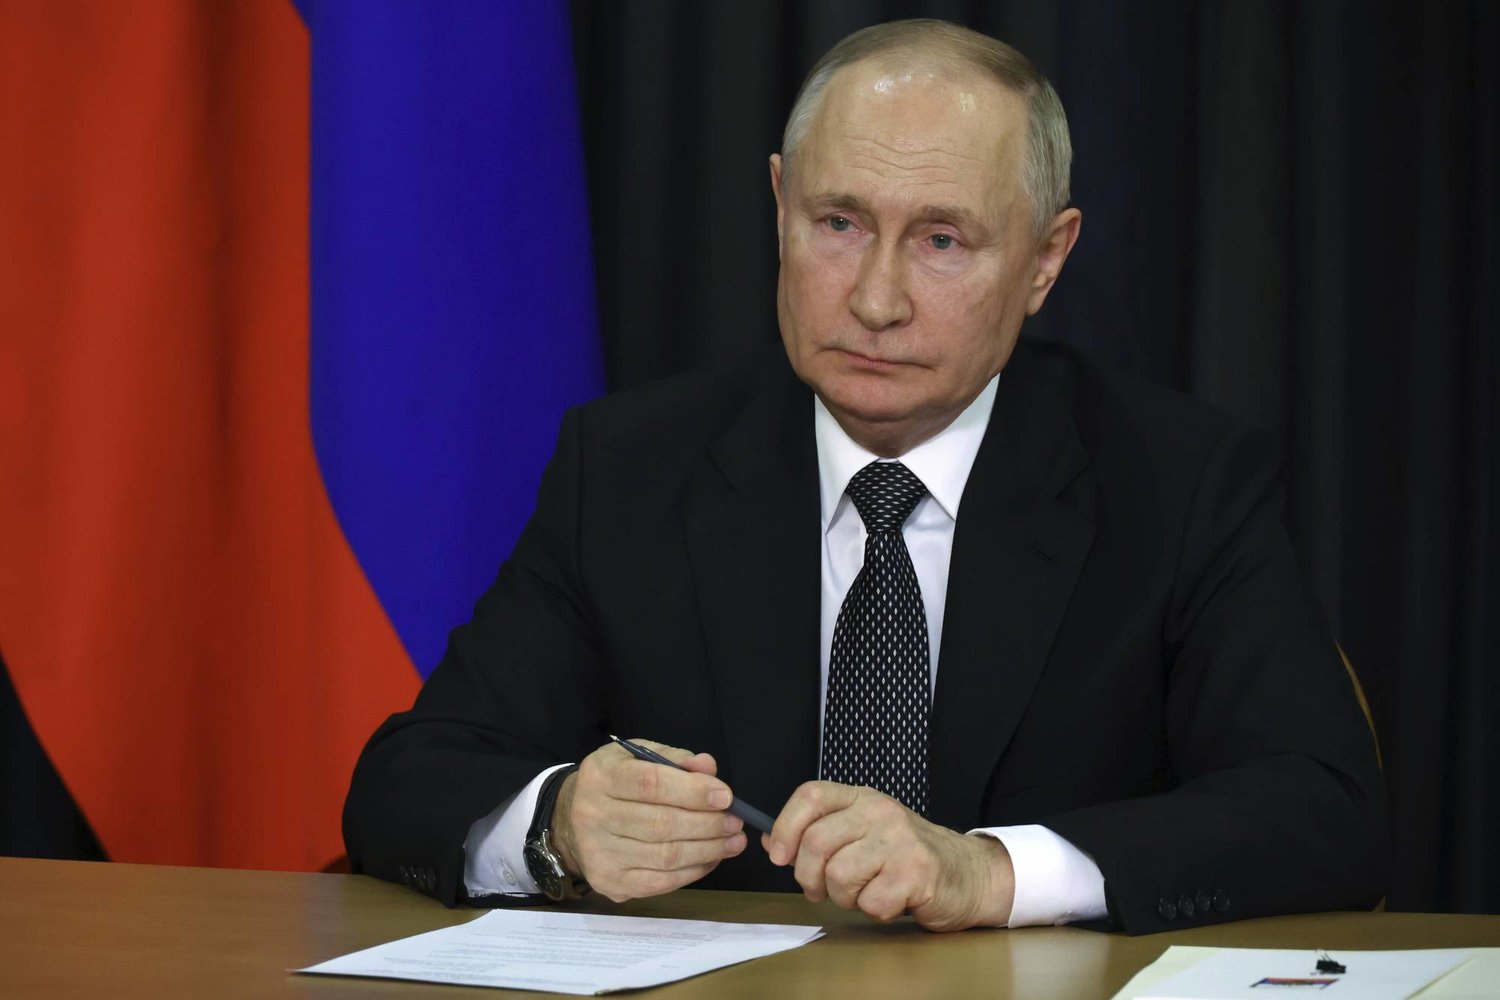 الرئيس الروسي فلاديمير بوتين يحضر جلسة عامة لمجلس الشعب الروسي العالمي (سبوتنيك - أ.ب)